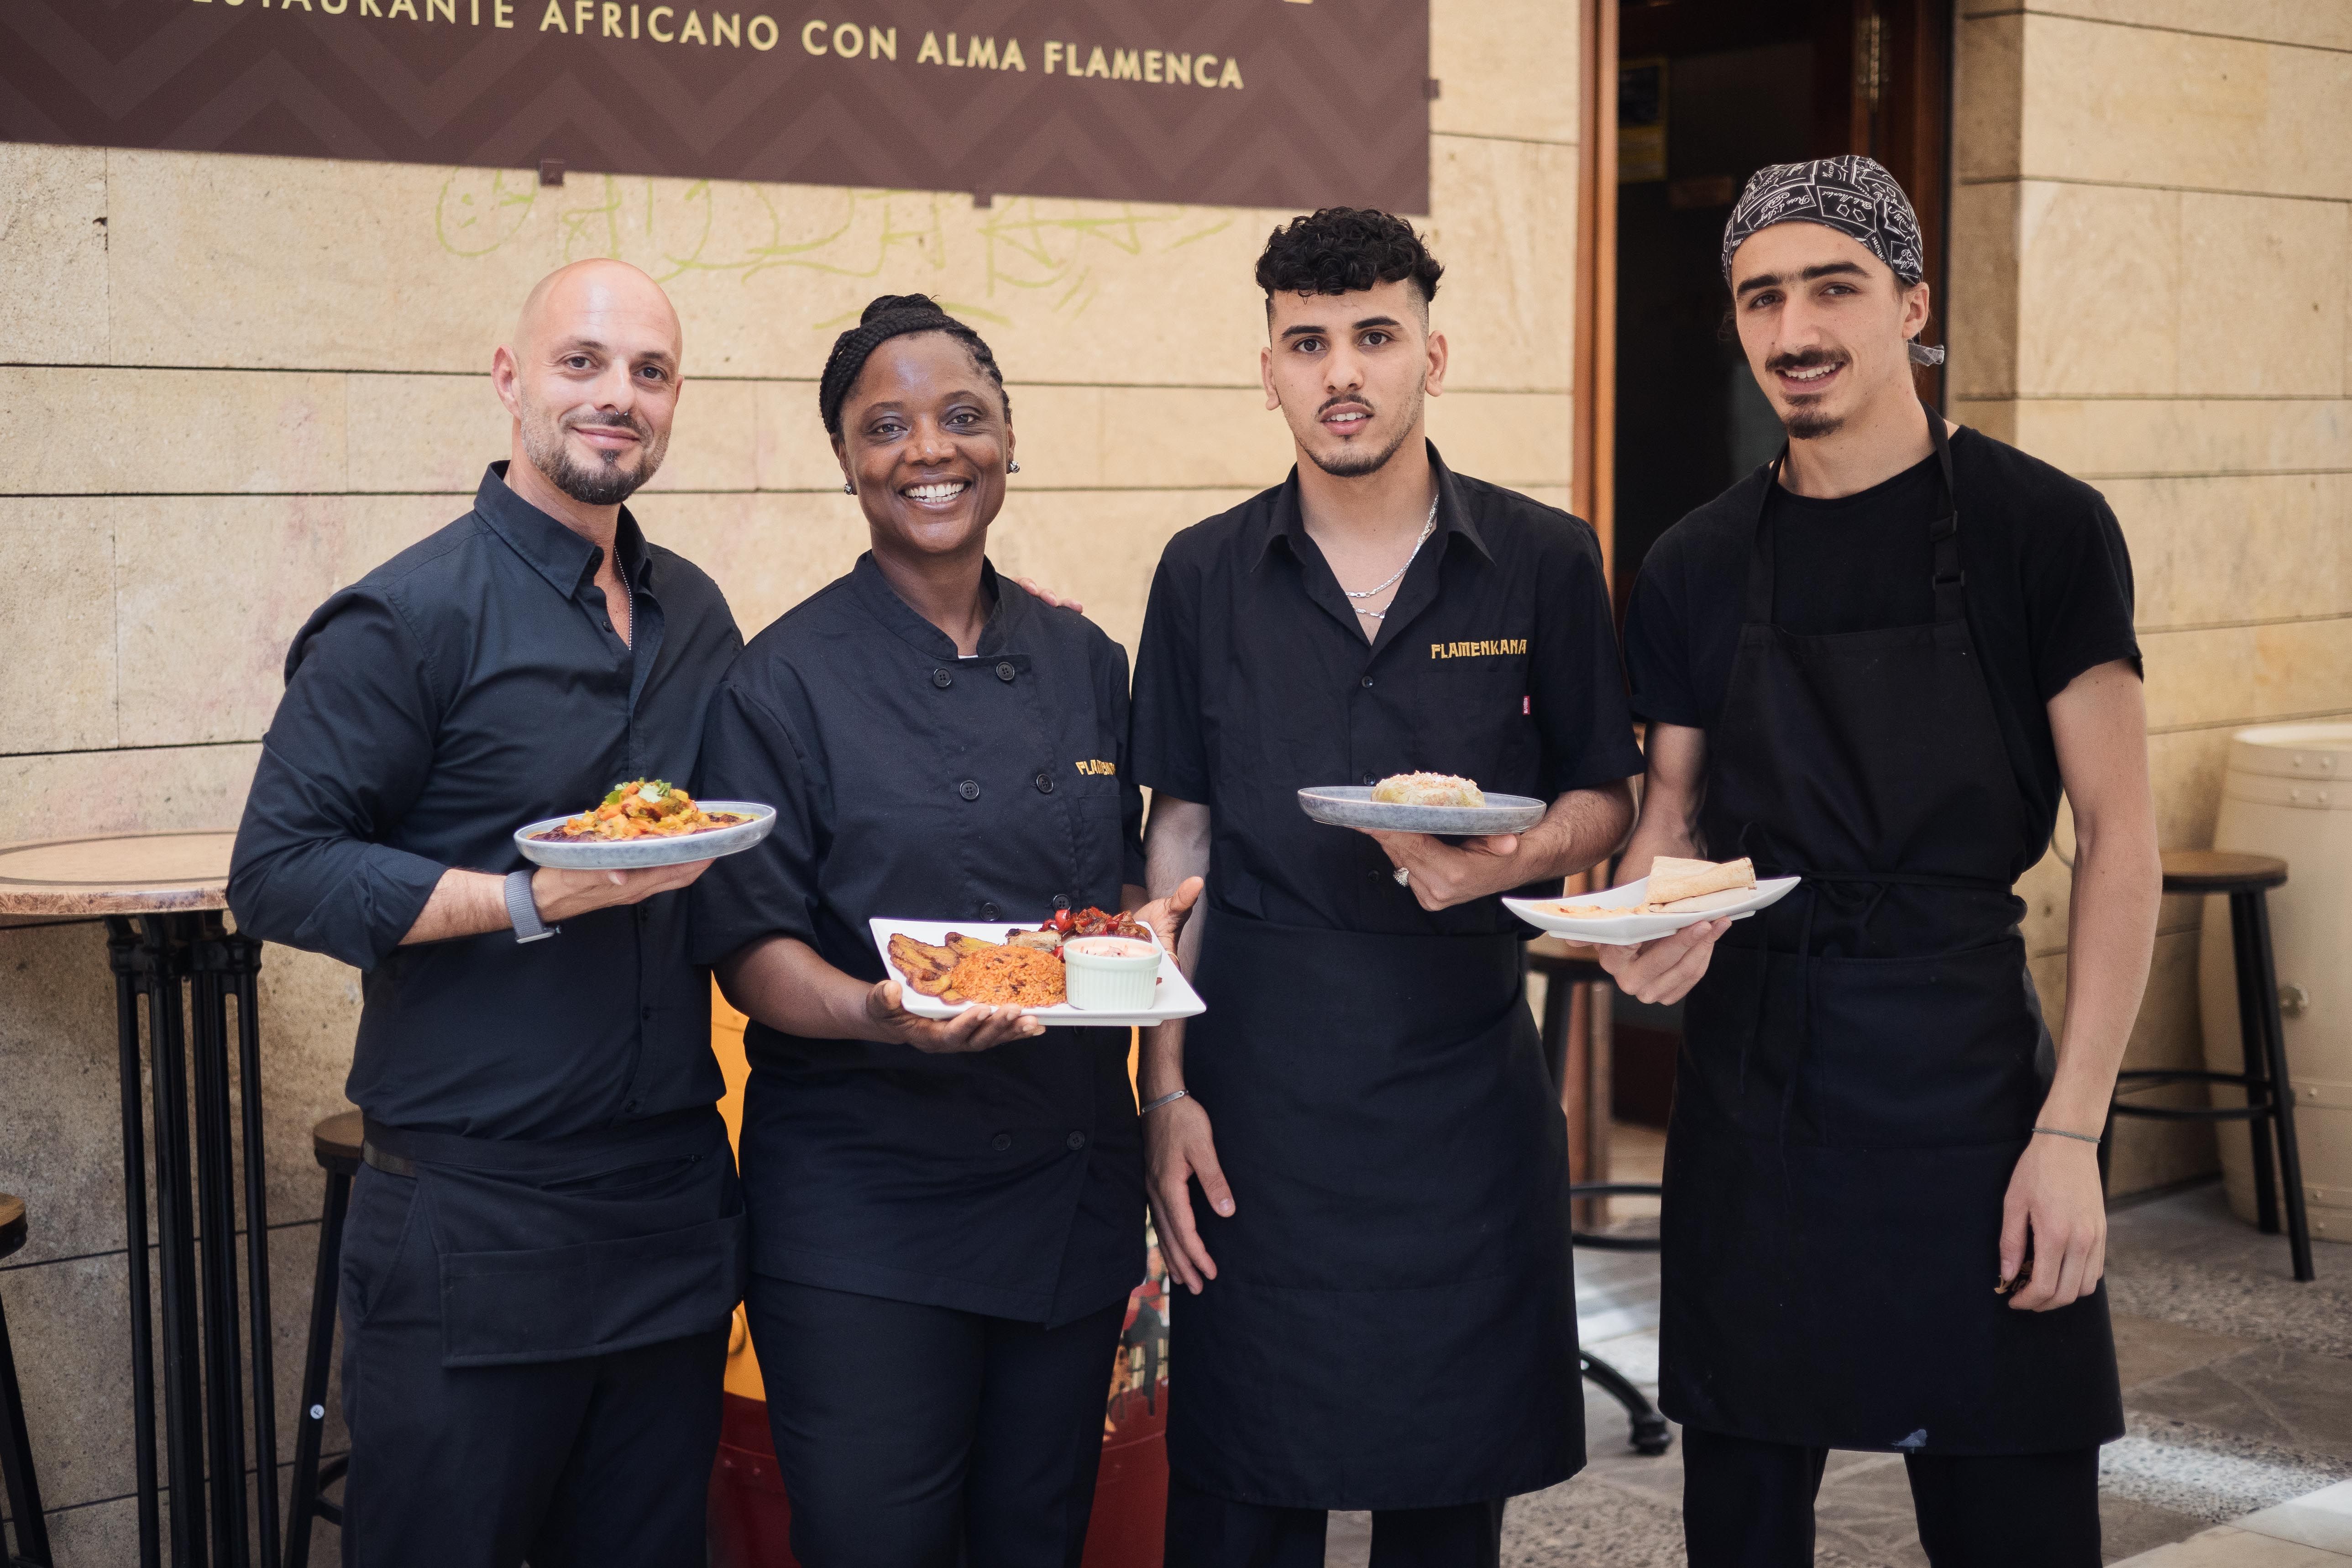 Flamenkana es el primer restaurante de comida africana en Jerez y uno de los cinco restaurantes exóticos en la provincia de Cádiz.